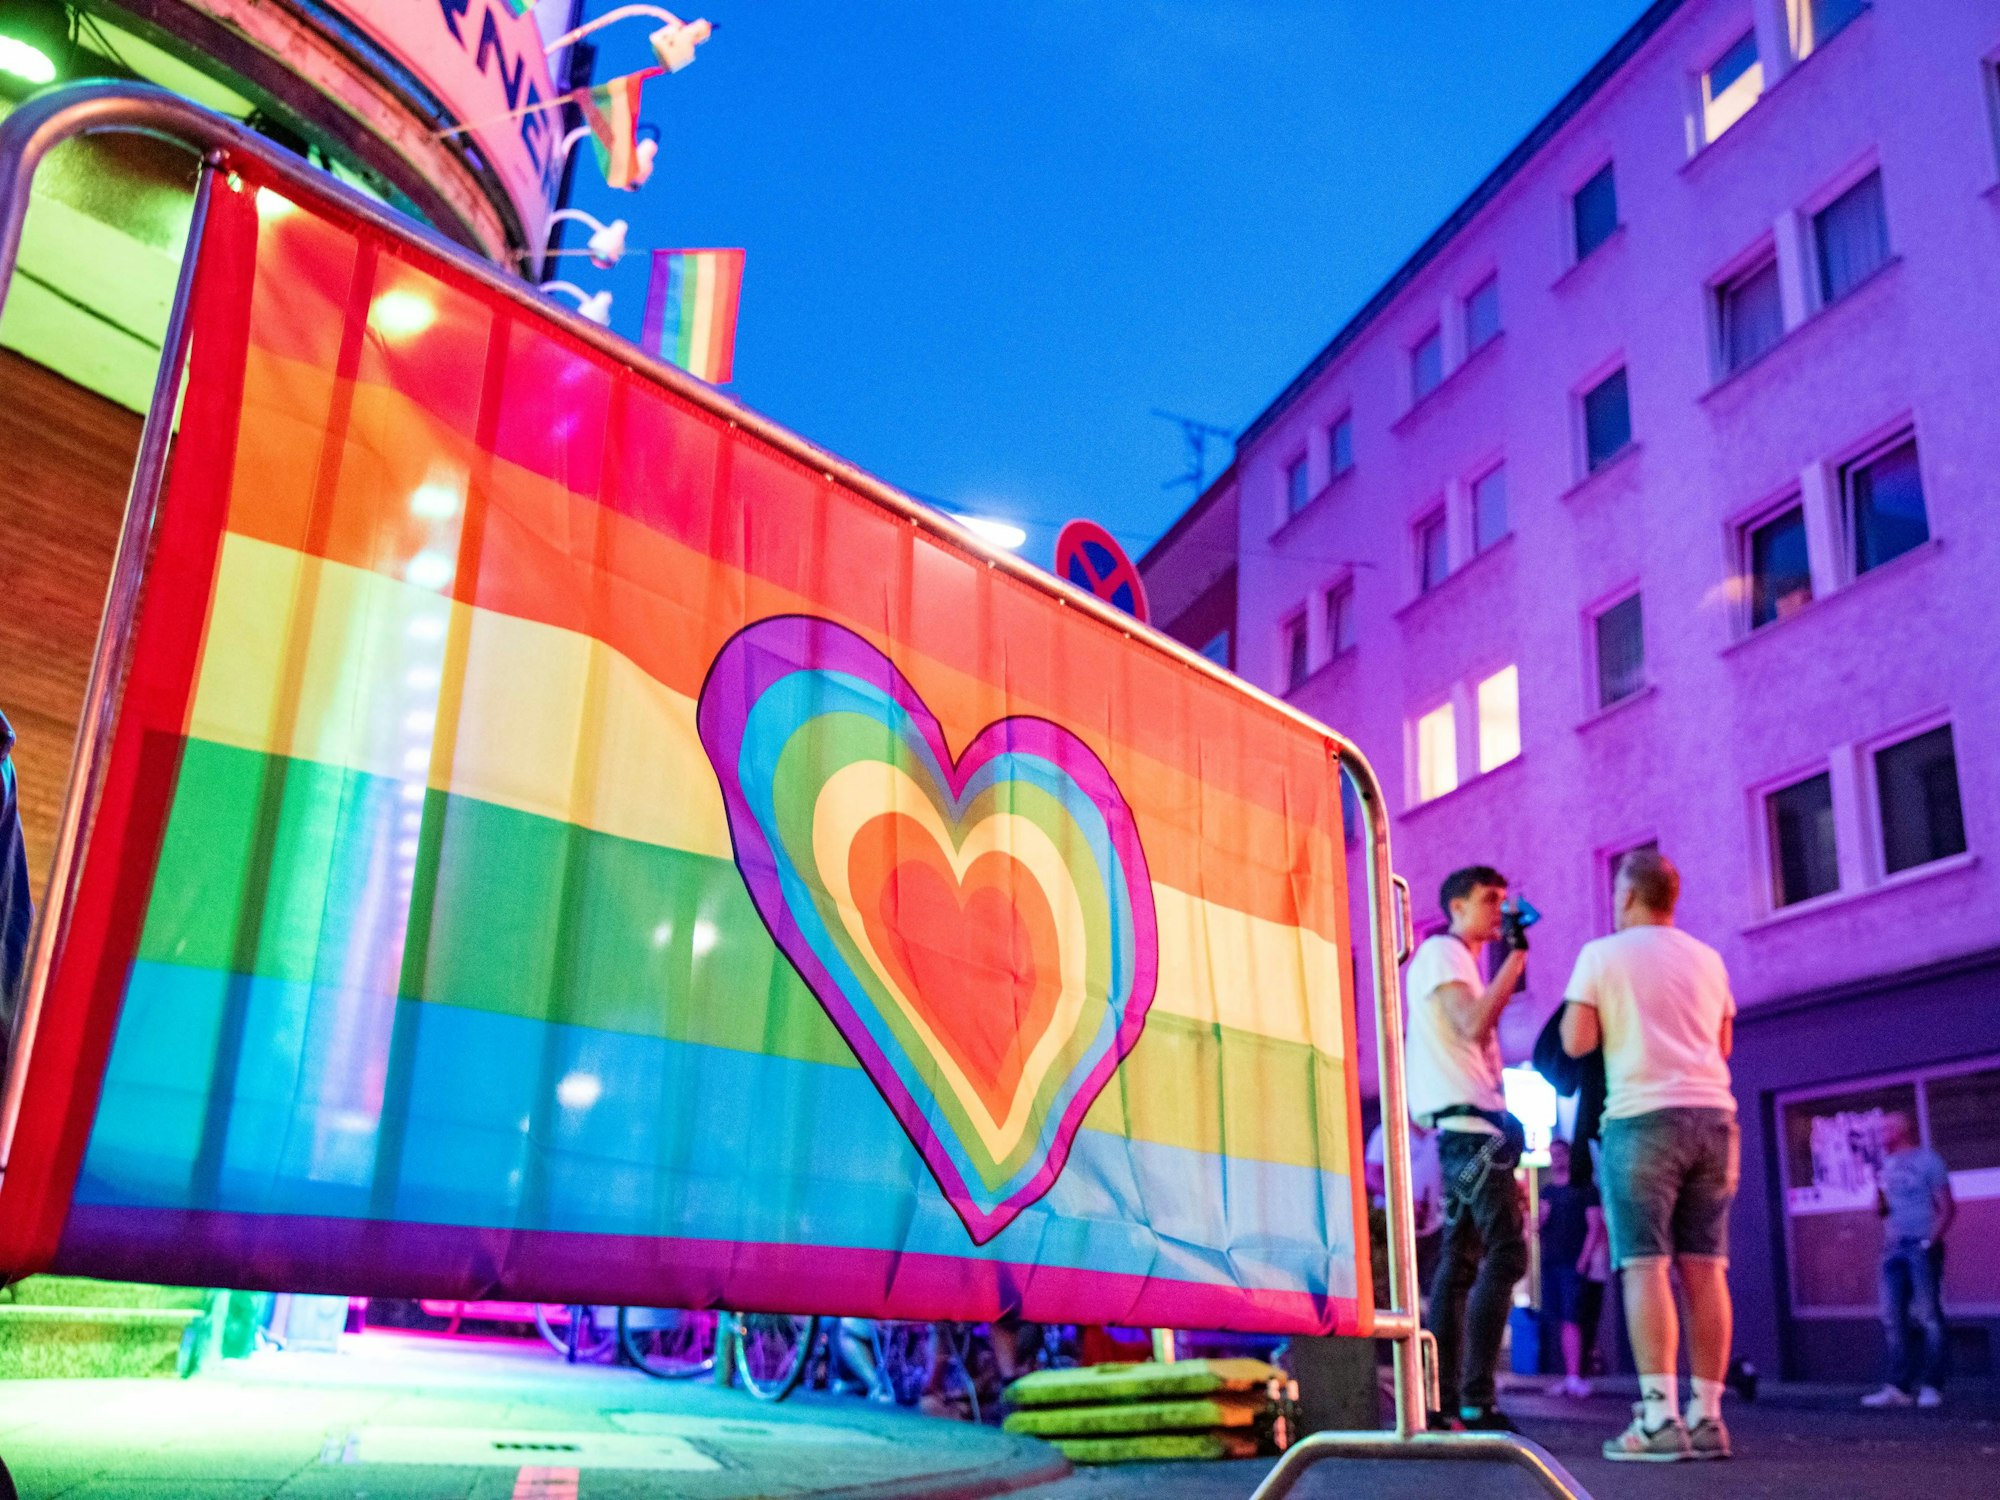 Am Treffpunkt der Queer-Szene, auf der Schaafenstraße, hängt eine Regenbogenflagge.